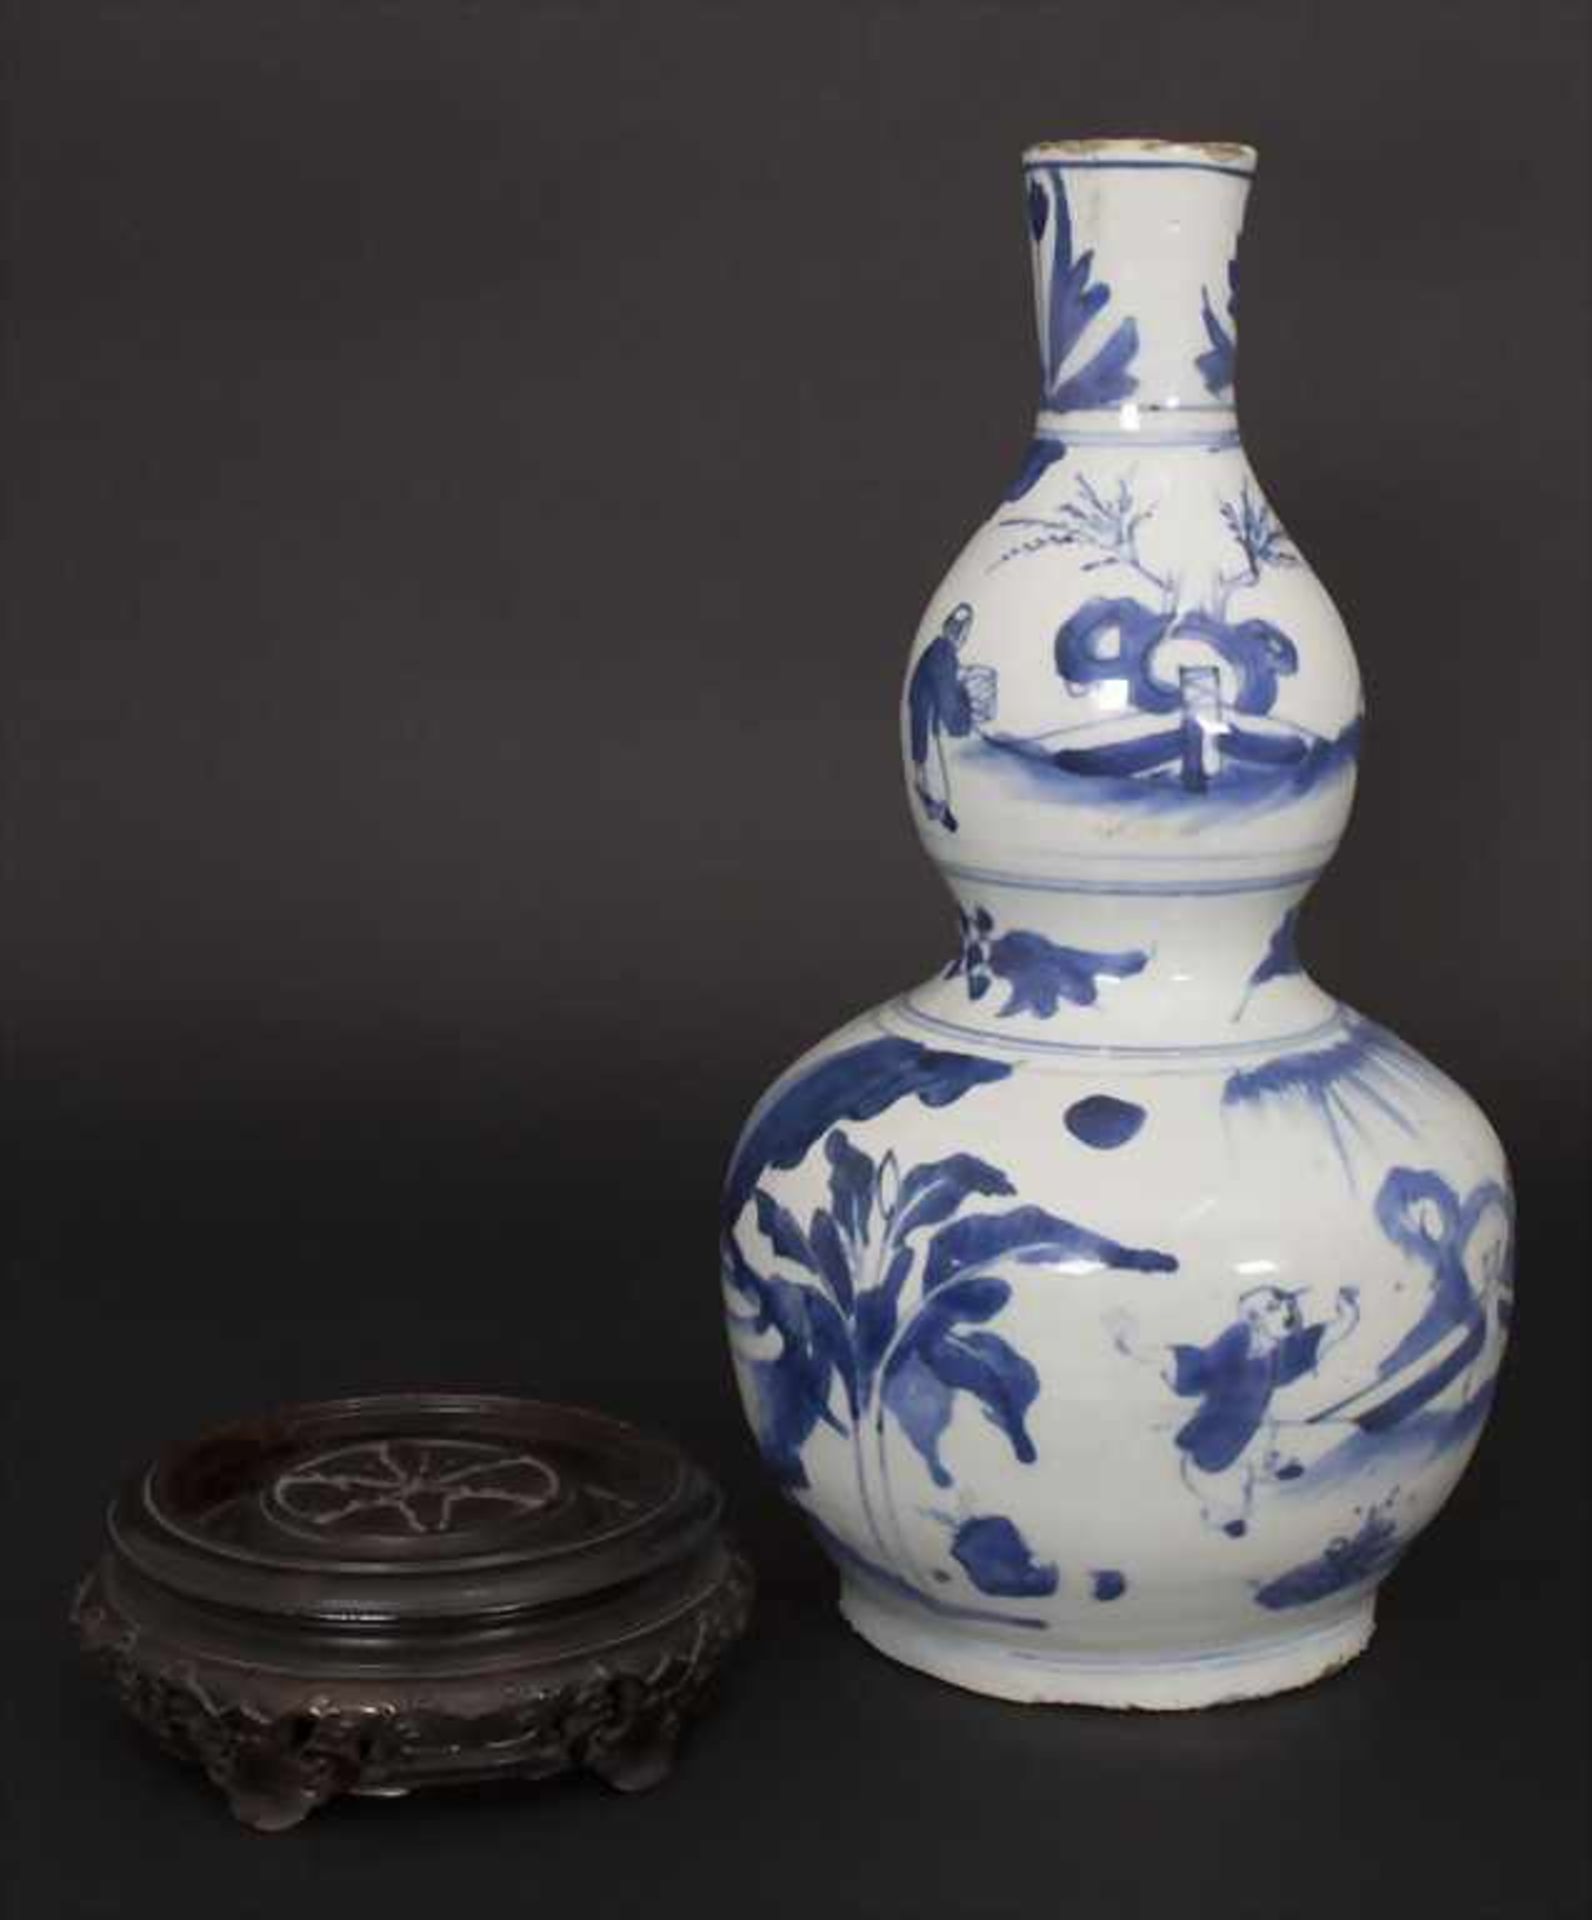 Kalebassenvase / A calabash vase, China, wohl 17. Jh.Material: Porzellan, blaue Unterglasurmalerei, - Bild 12 aus 17